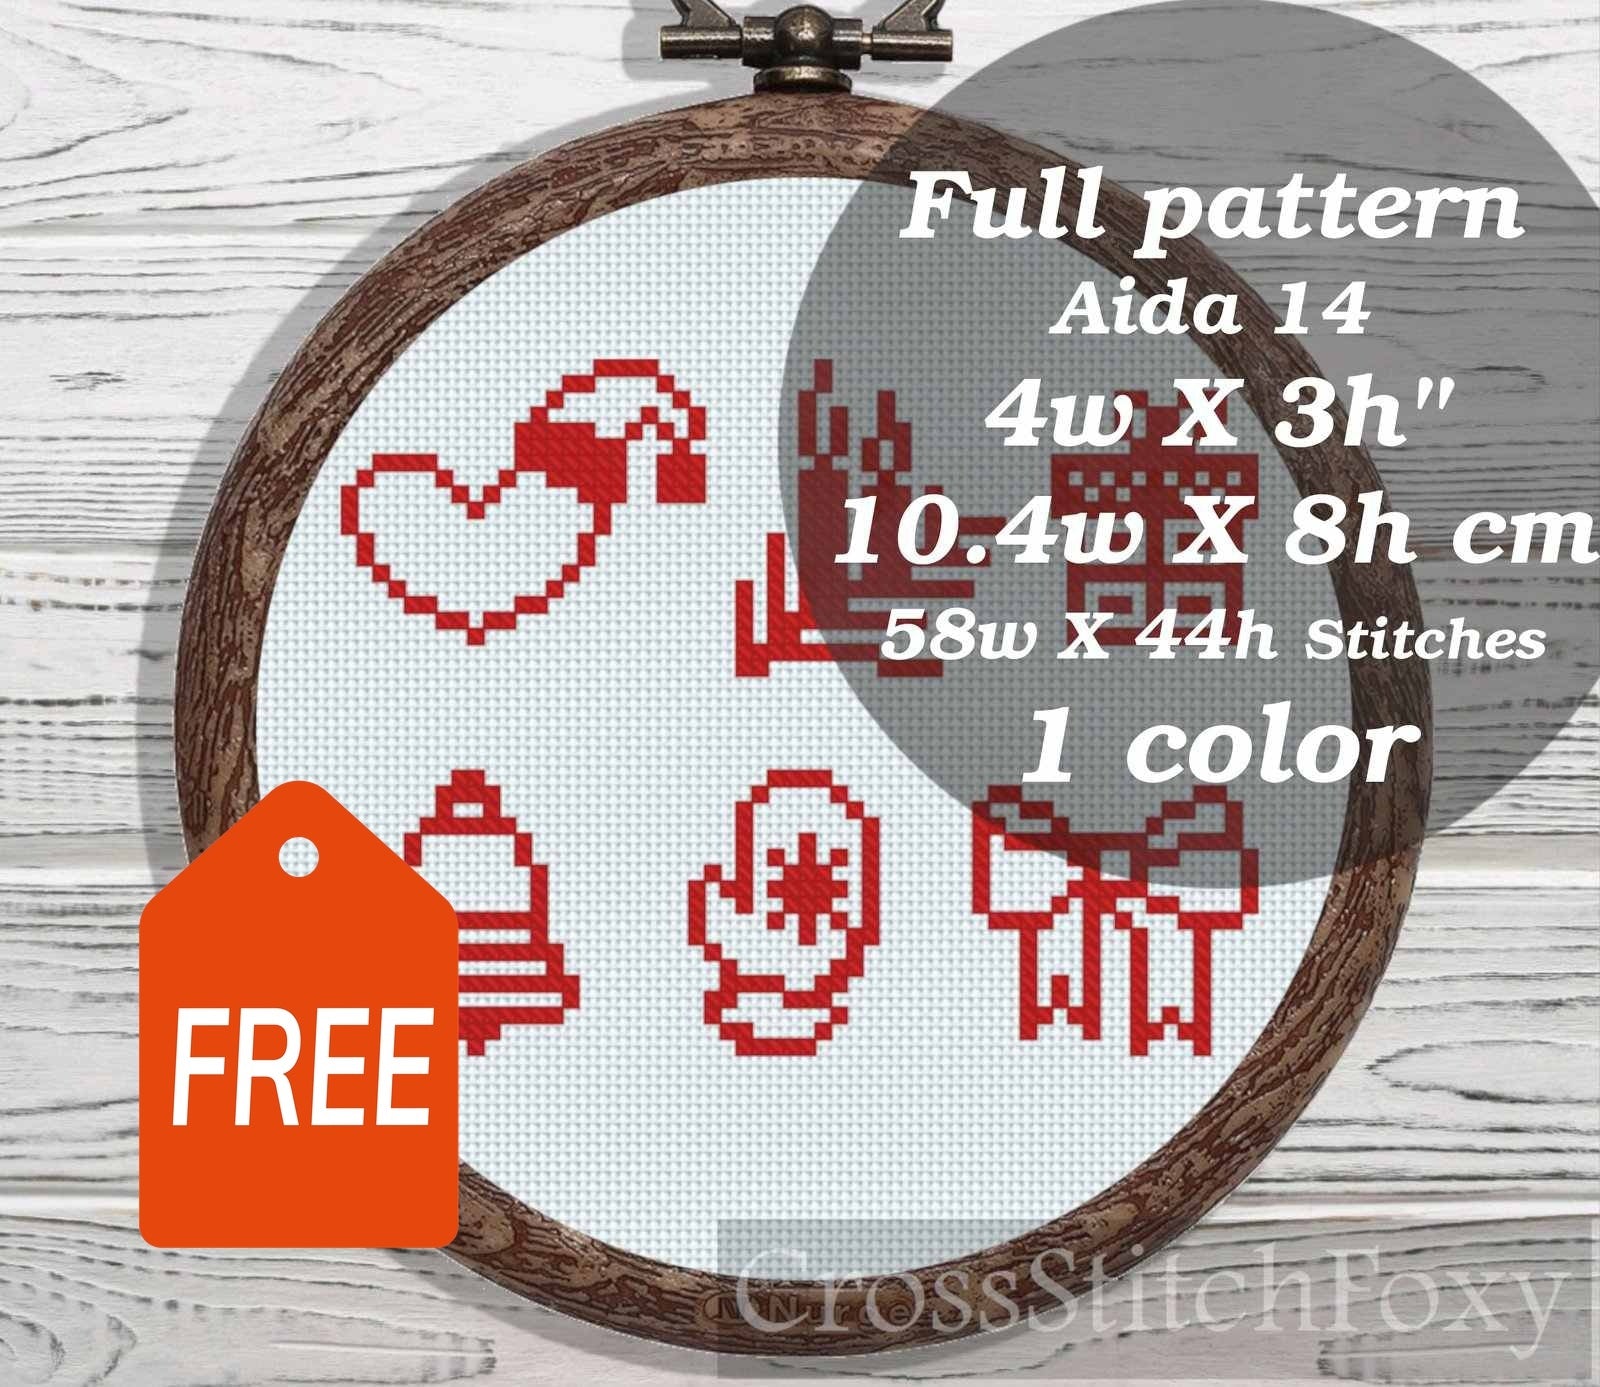 Christmas Mini cross stitch pattern FREE